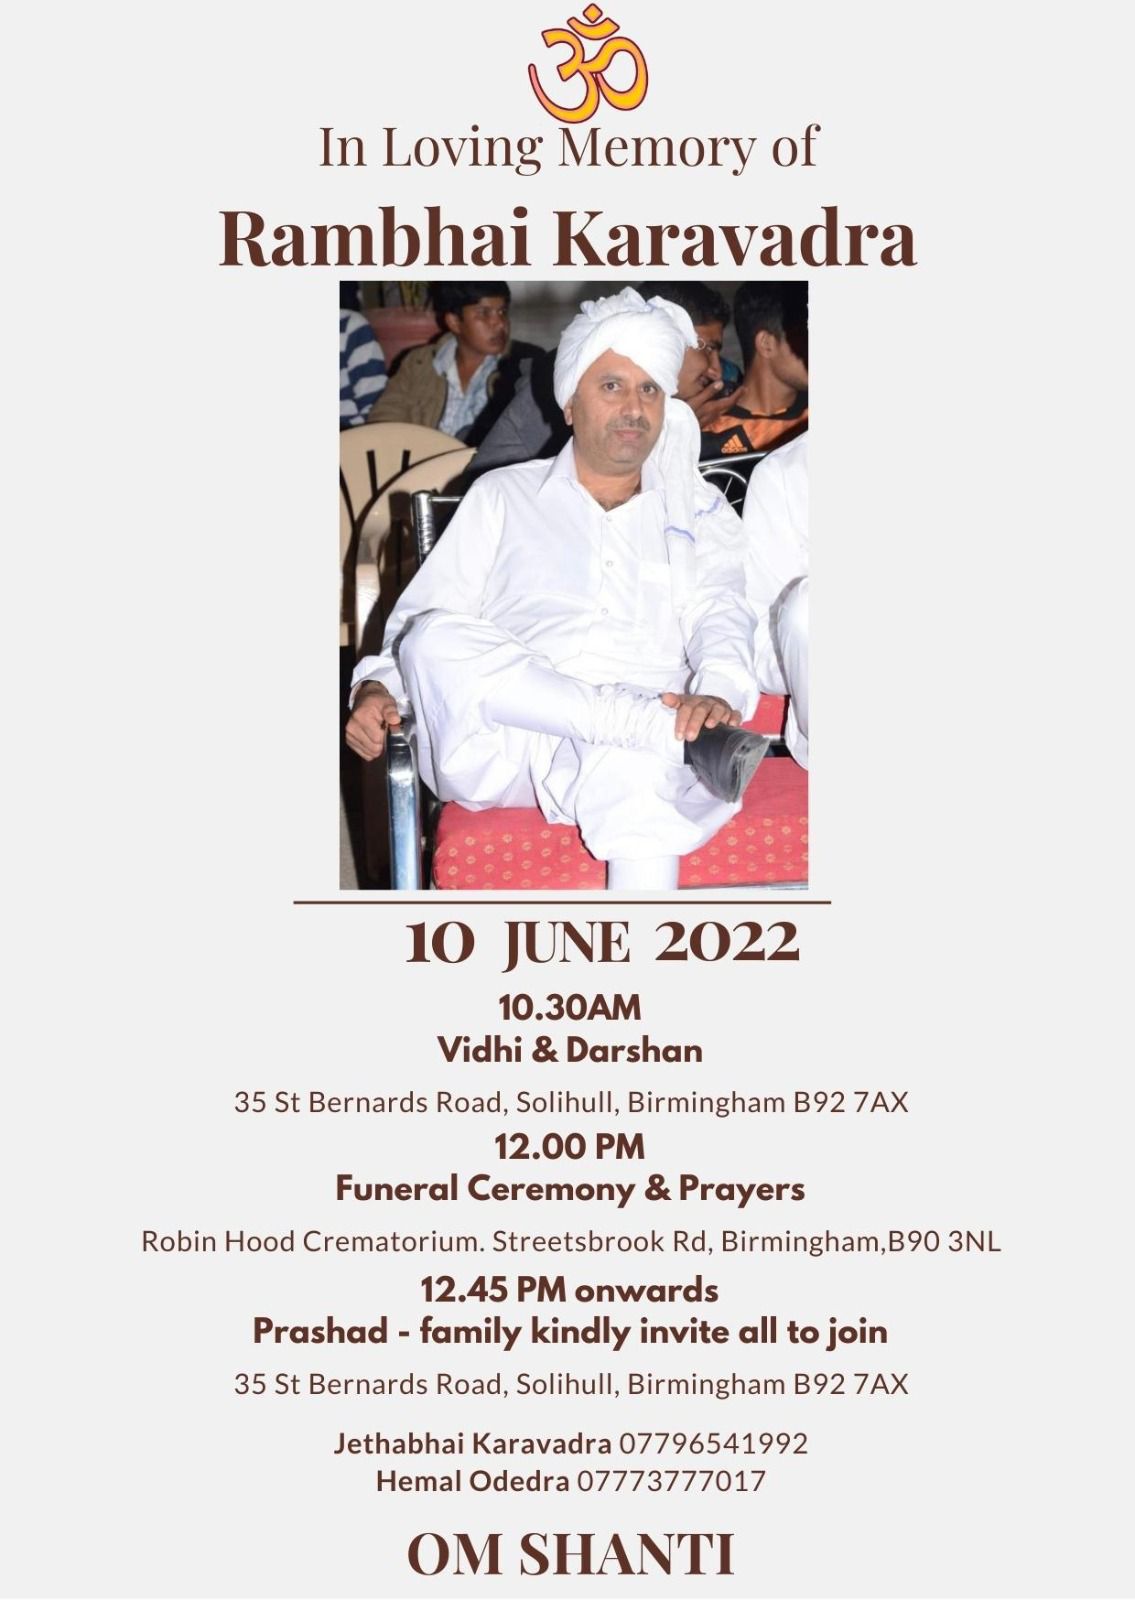 Rambhai Karavadra passed away